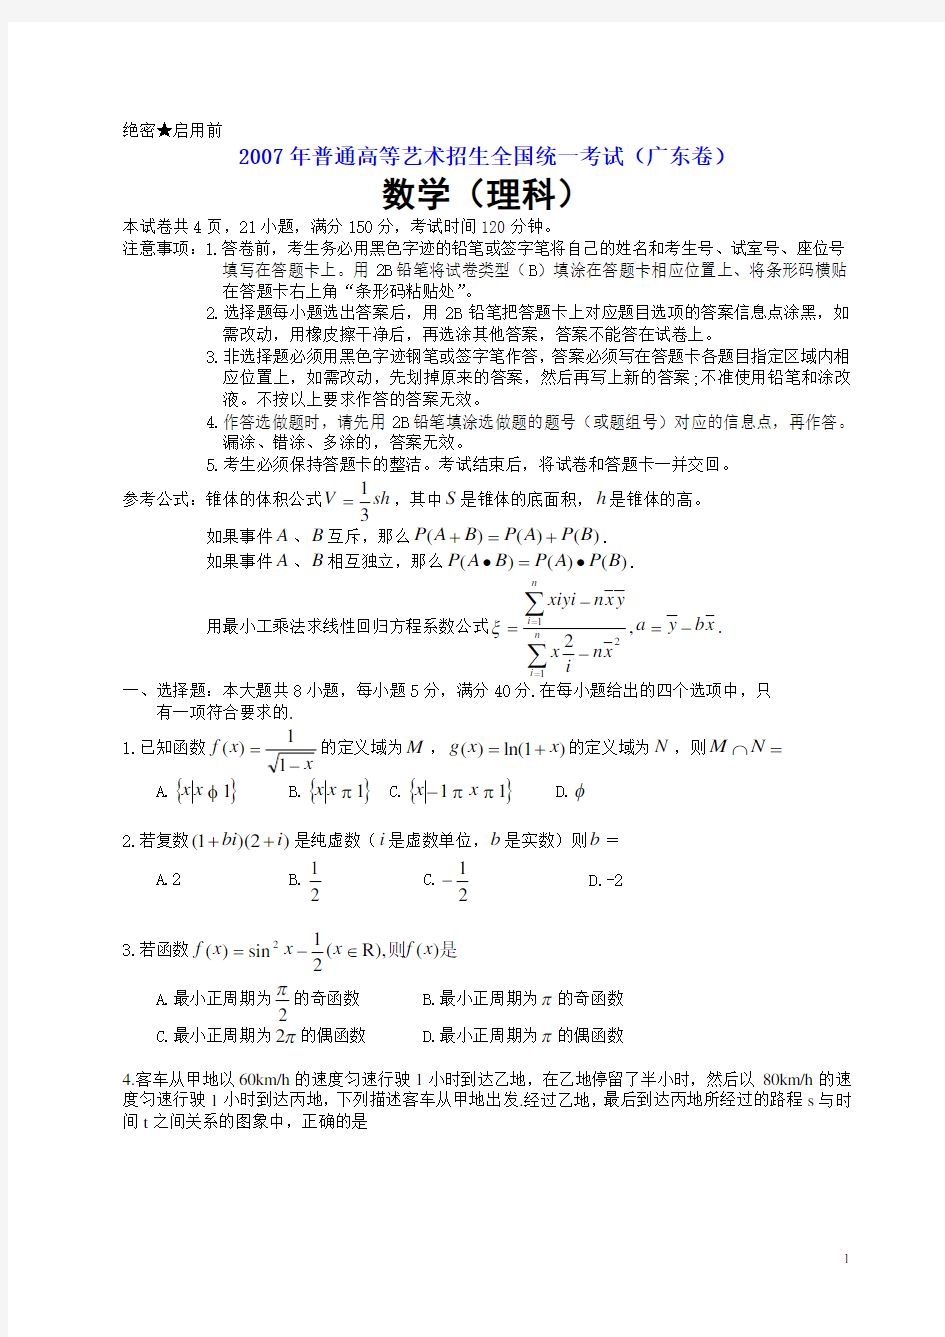 2007年高考.广东卷.理科数学试题及解答